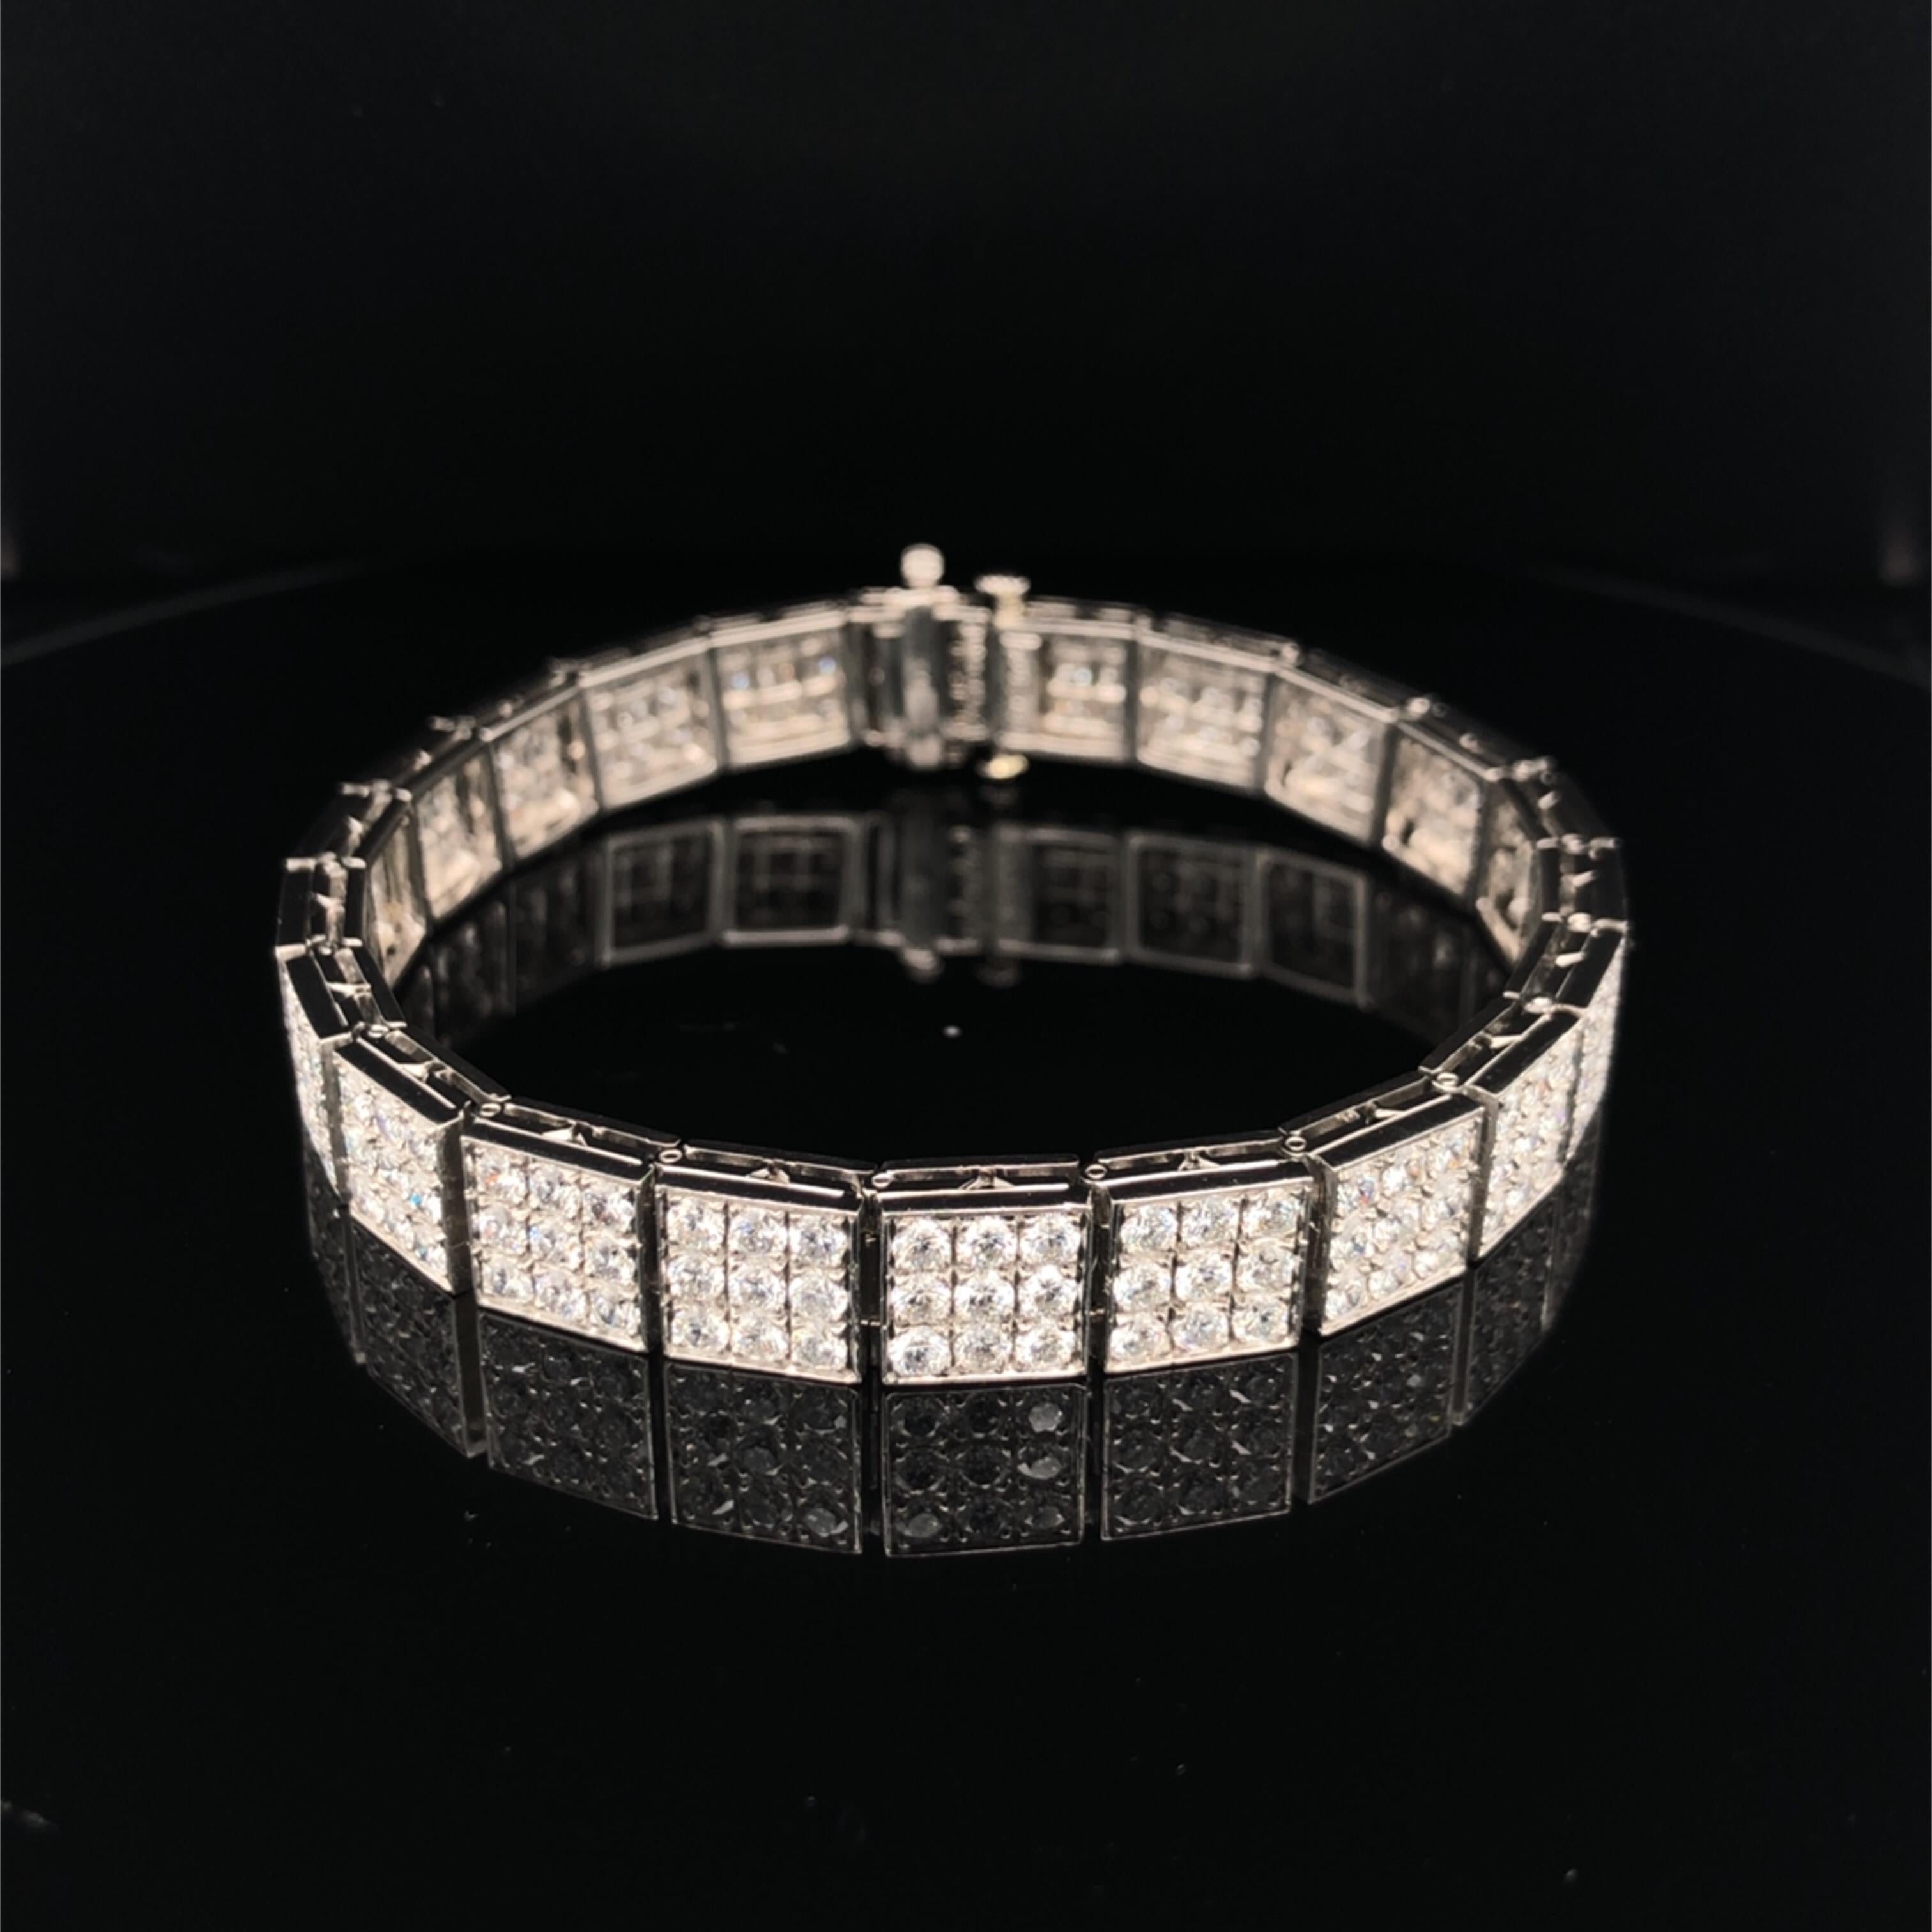 Ce bracelet en platine d'Oscar Heyman contient 198 diamants ronds pesant 8,32 cts. (qualité F-G/VS) dans les ornements d'un carré de 3x3. Il porte la marque du fabricant, IRID PLAT, et le numéro de série 803845.

Le bracelet mesure 7'' de long et